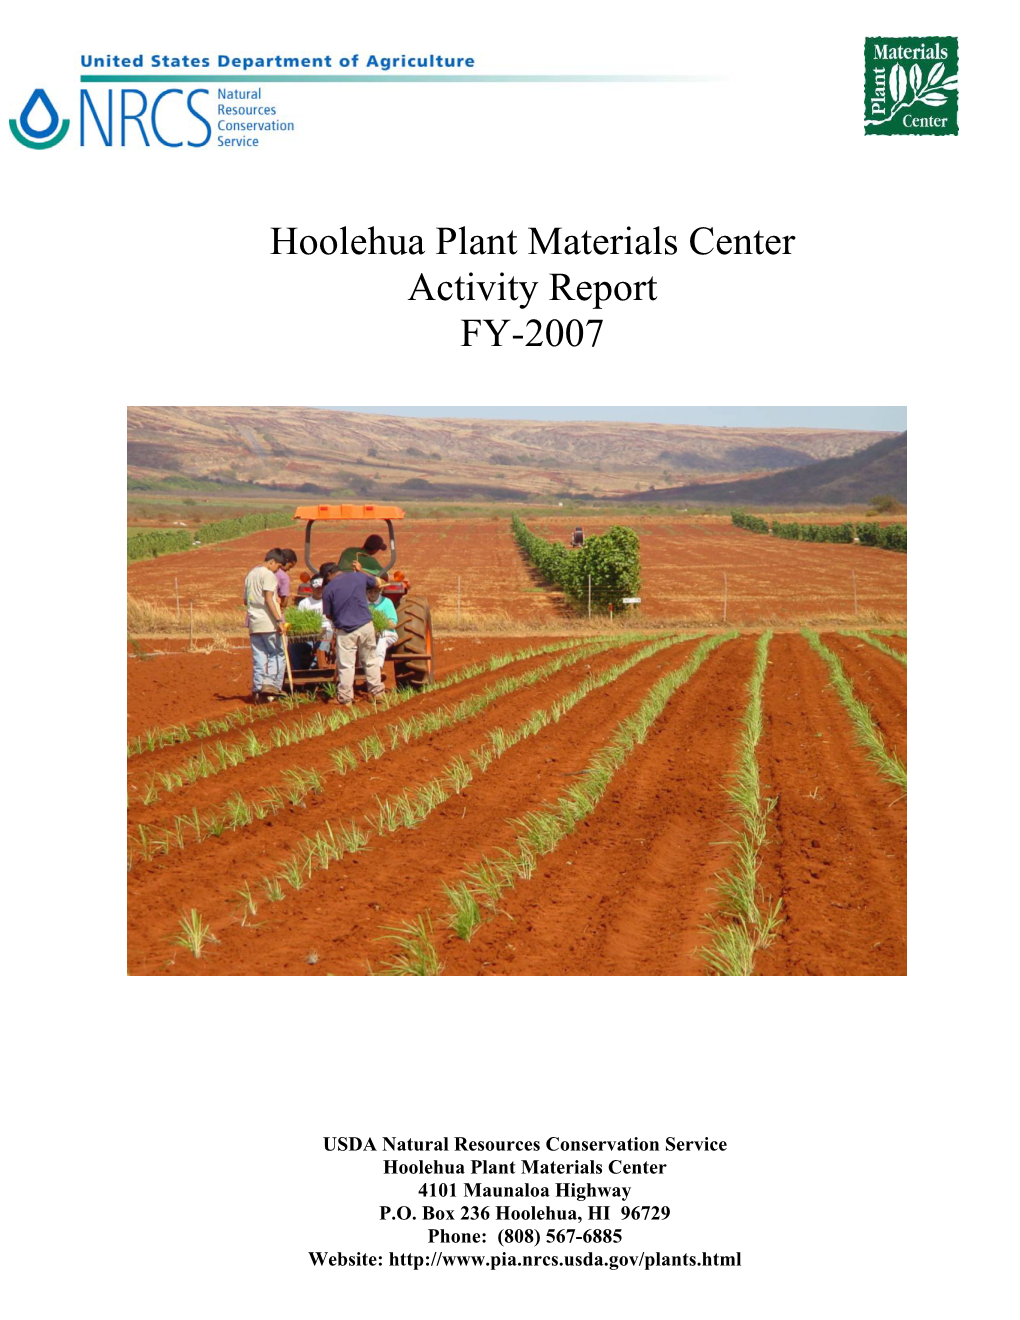 Hoolehua Plant Materials Center Activity Report FY-2007